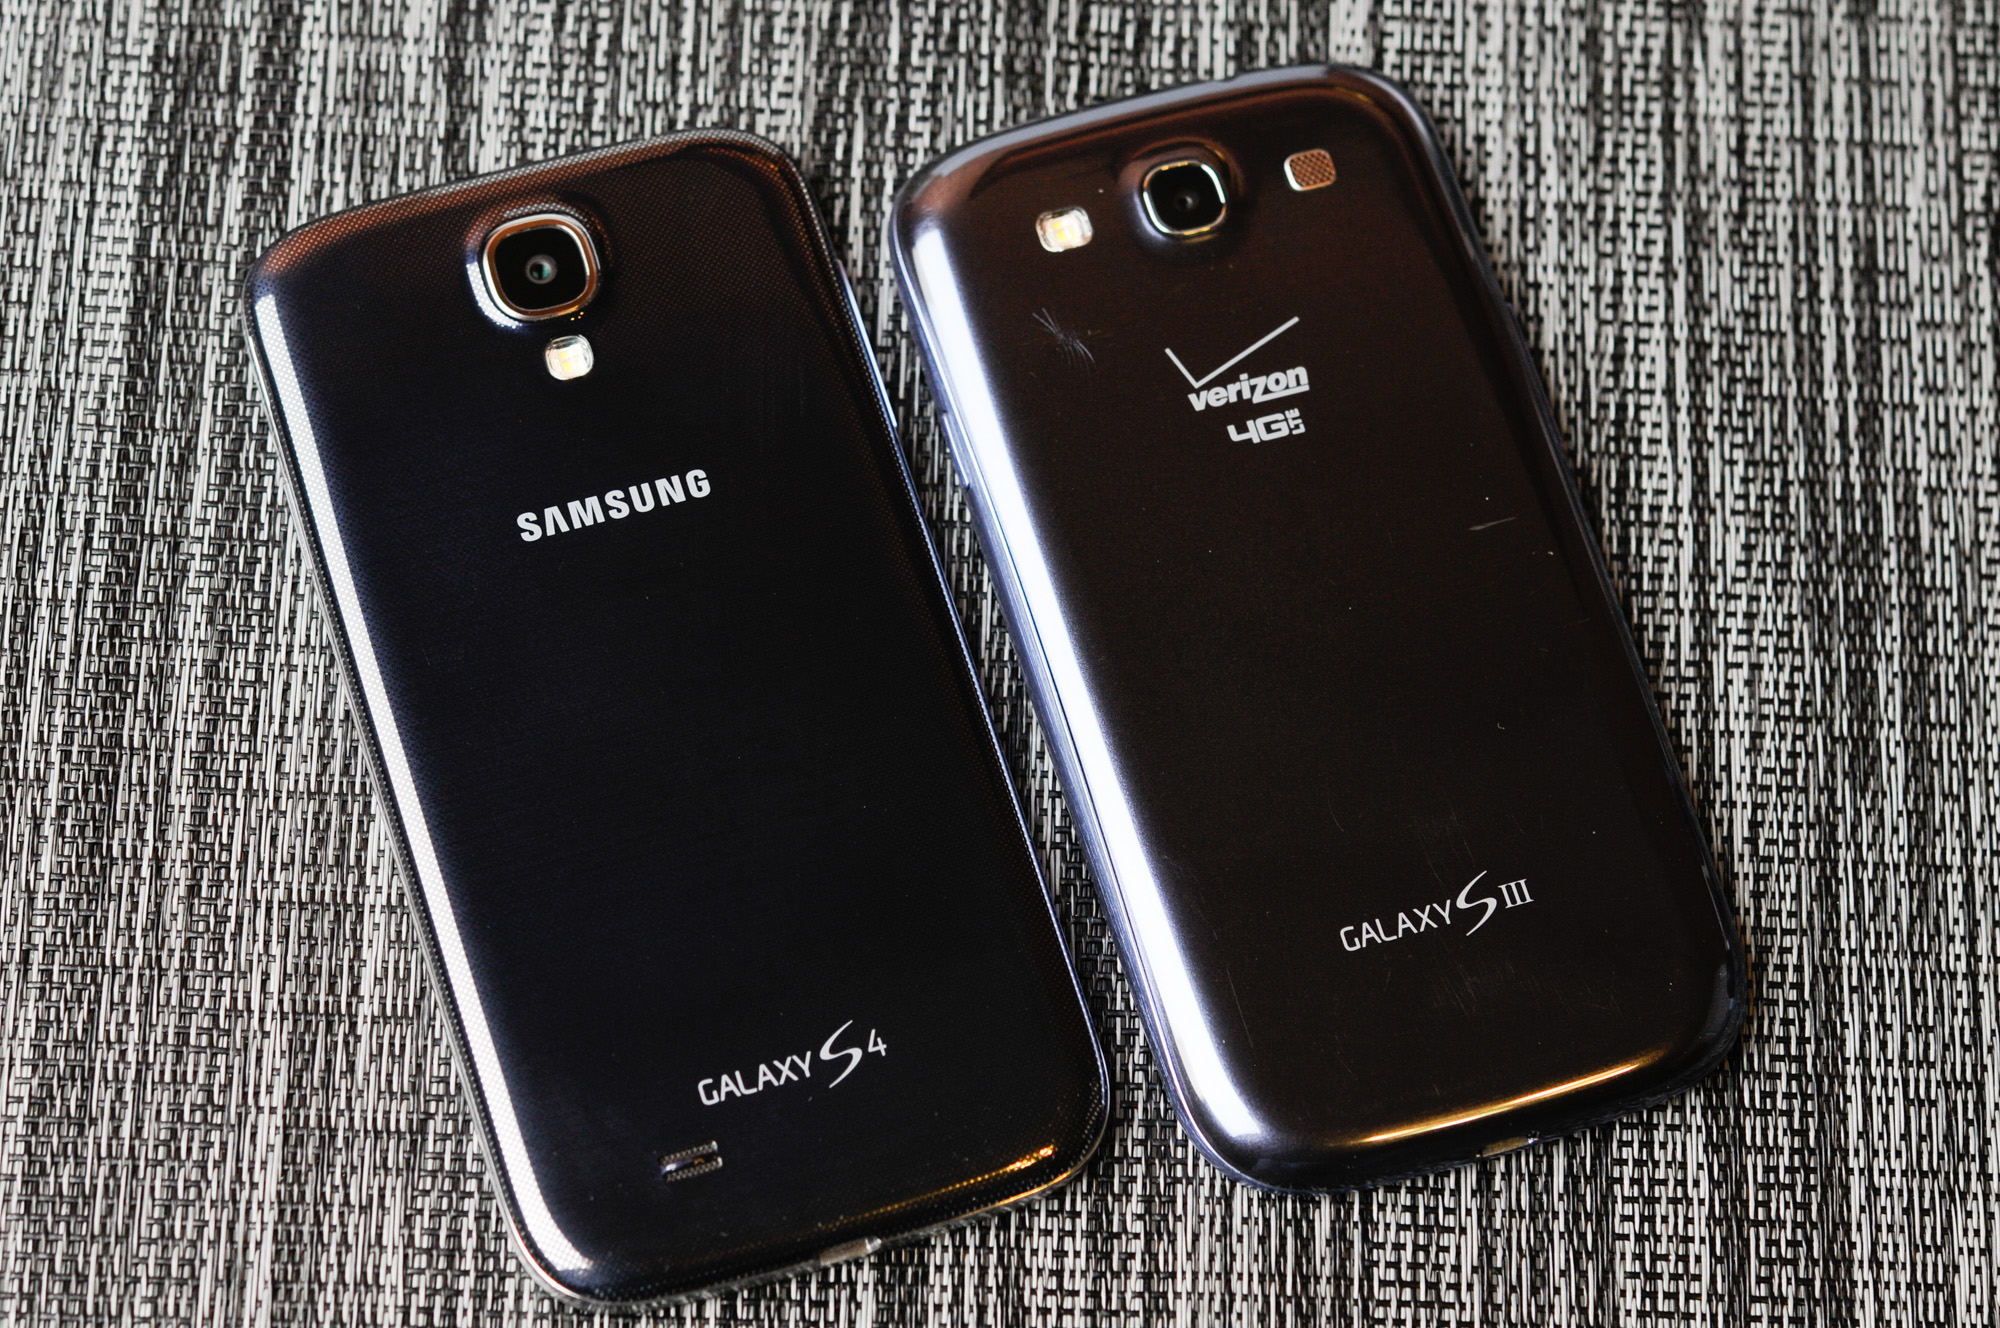 Ga trouwen Beg hamer Samsung Galaxy S 4 Review - Part 1